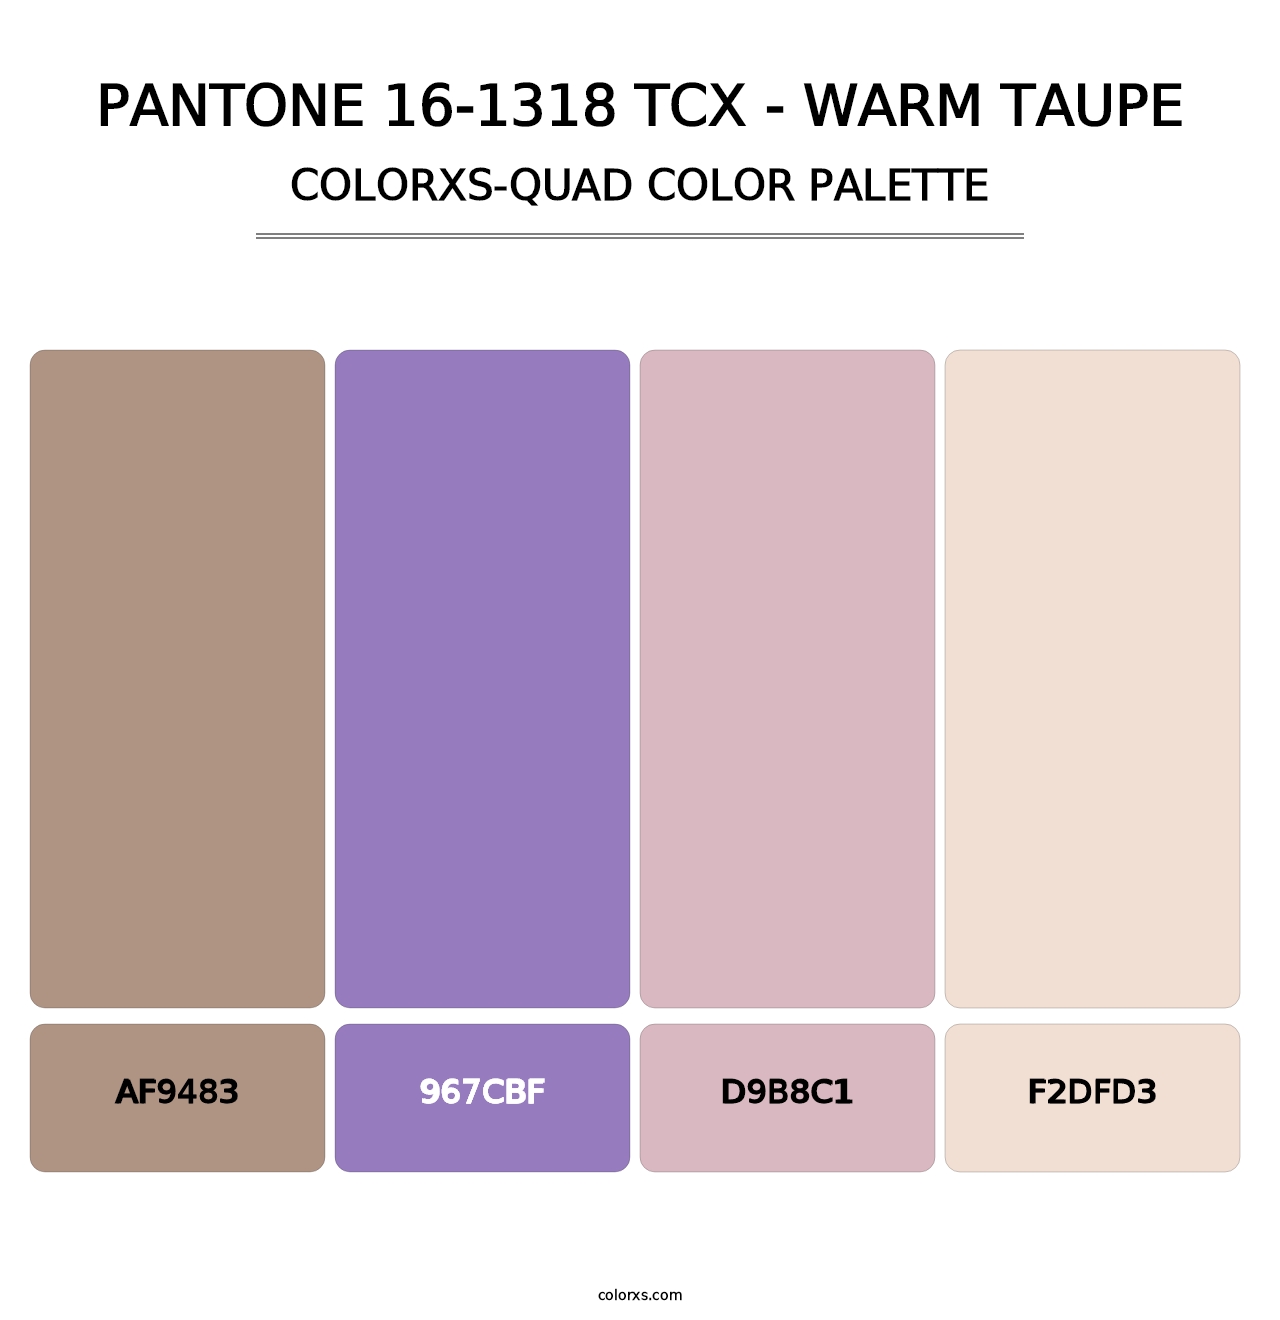 PANTONE 16-1318 TCX - Warm Taupe - Colorxs Quad Palette